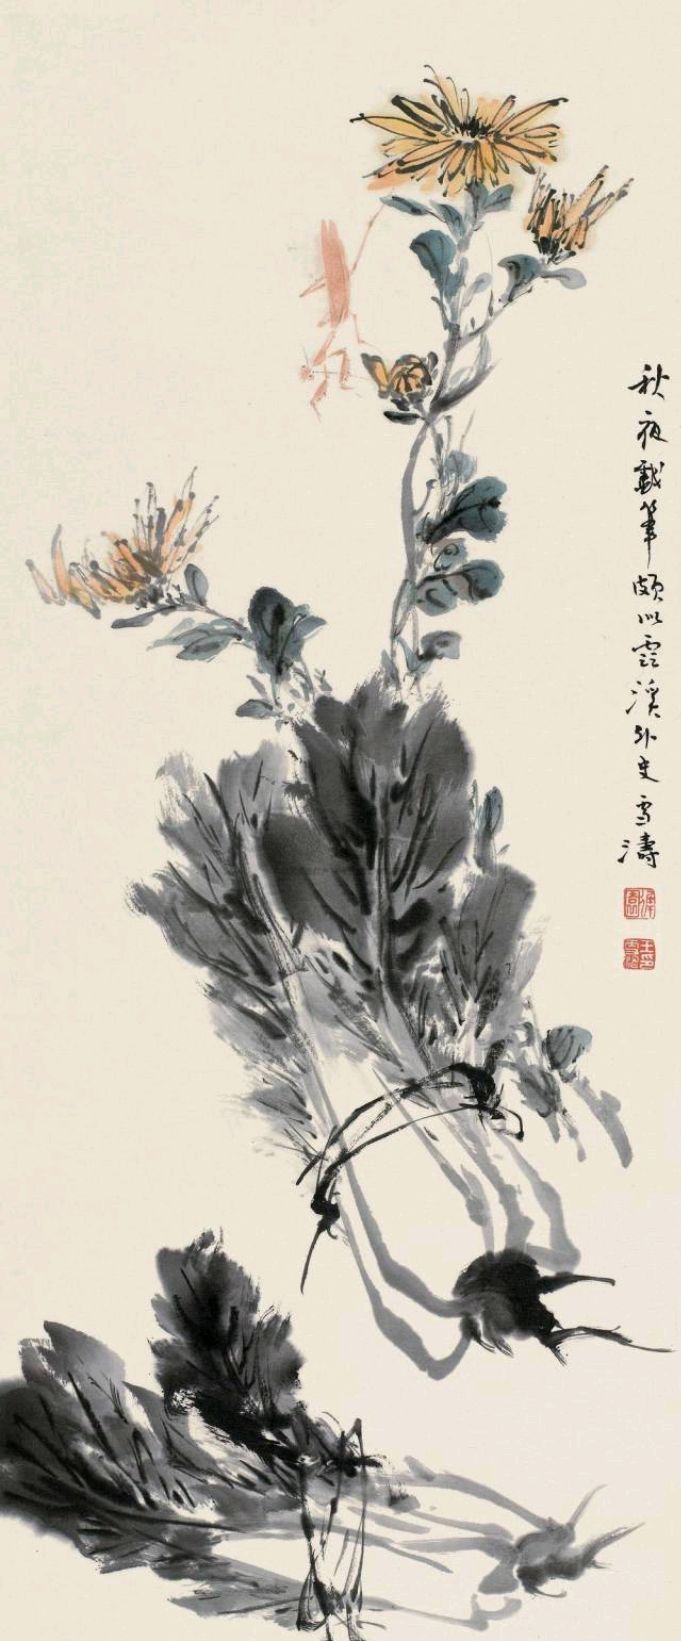 d01,早起的鸟儿有虫吃,集中精力学习:王雪涛国画作品